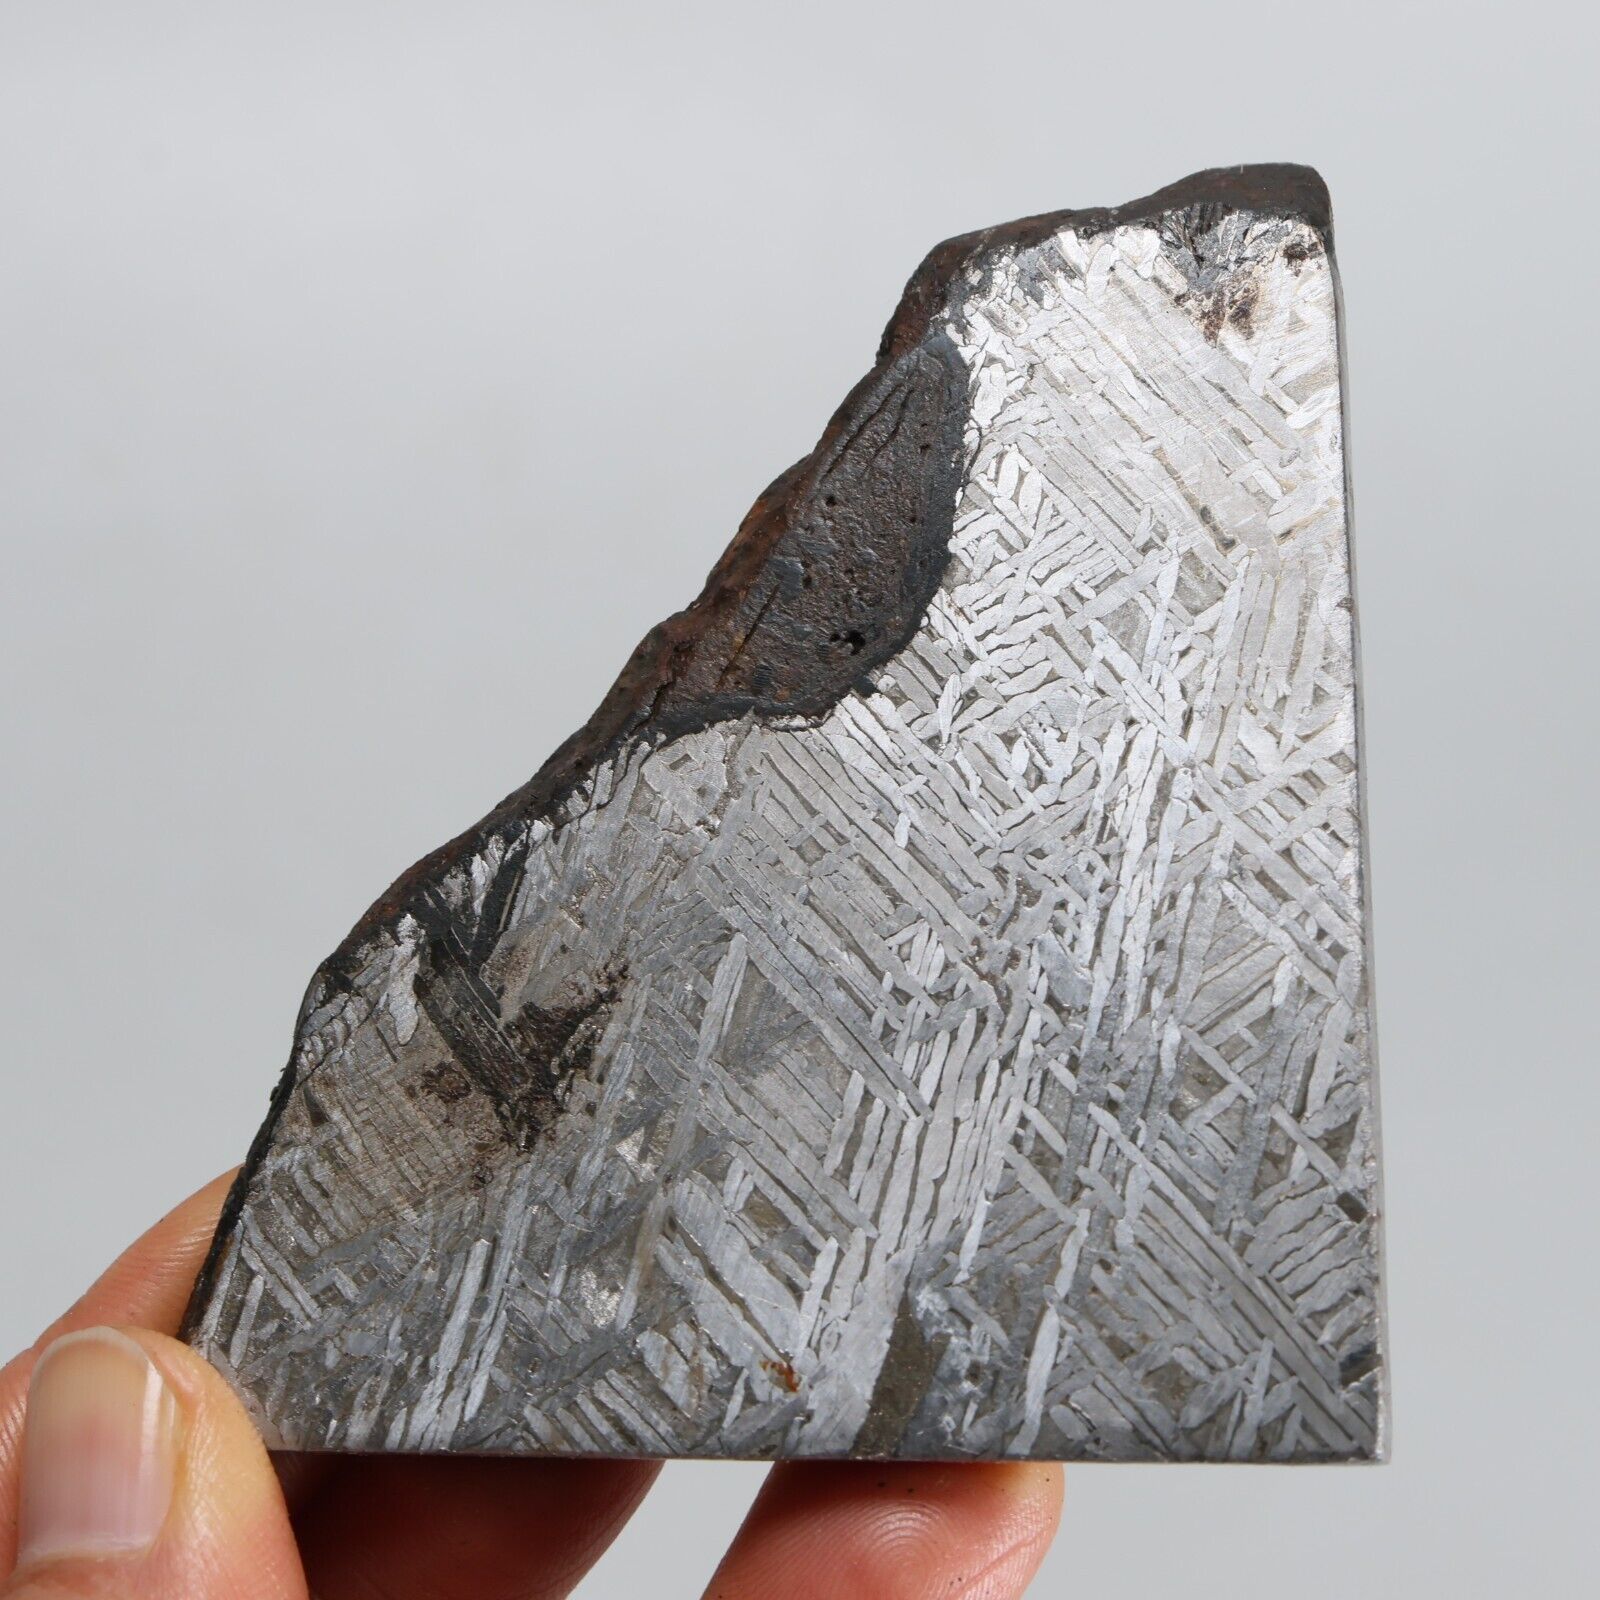 165g Muonionalusta Meteorite ,  Naturally Iron Meteorite square slice F219